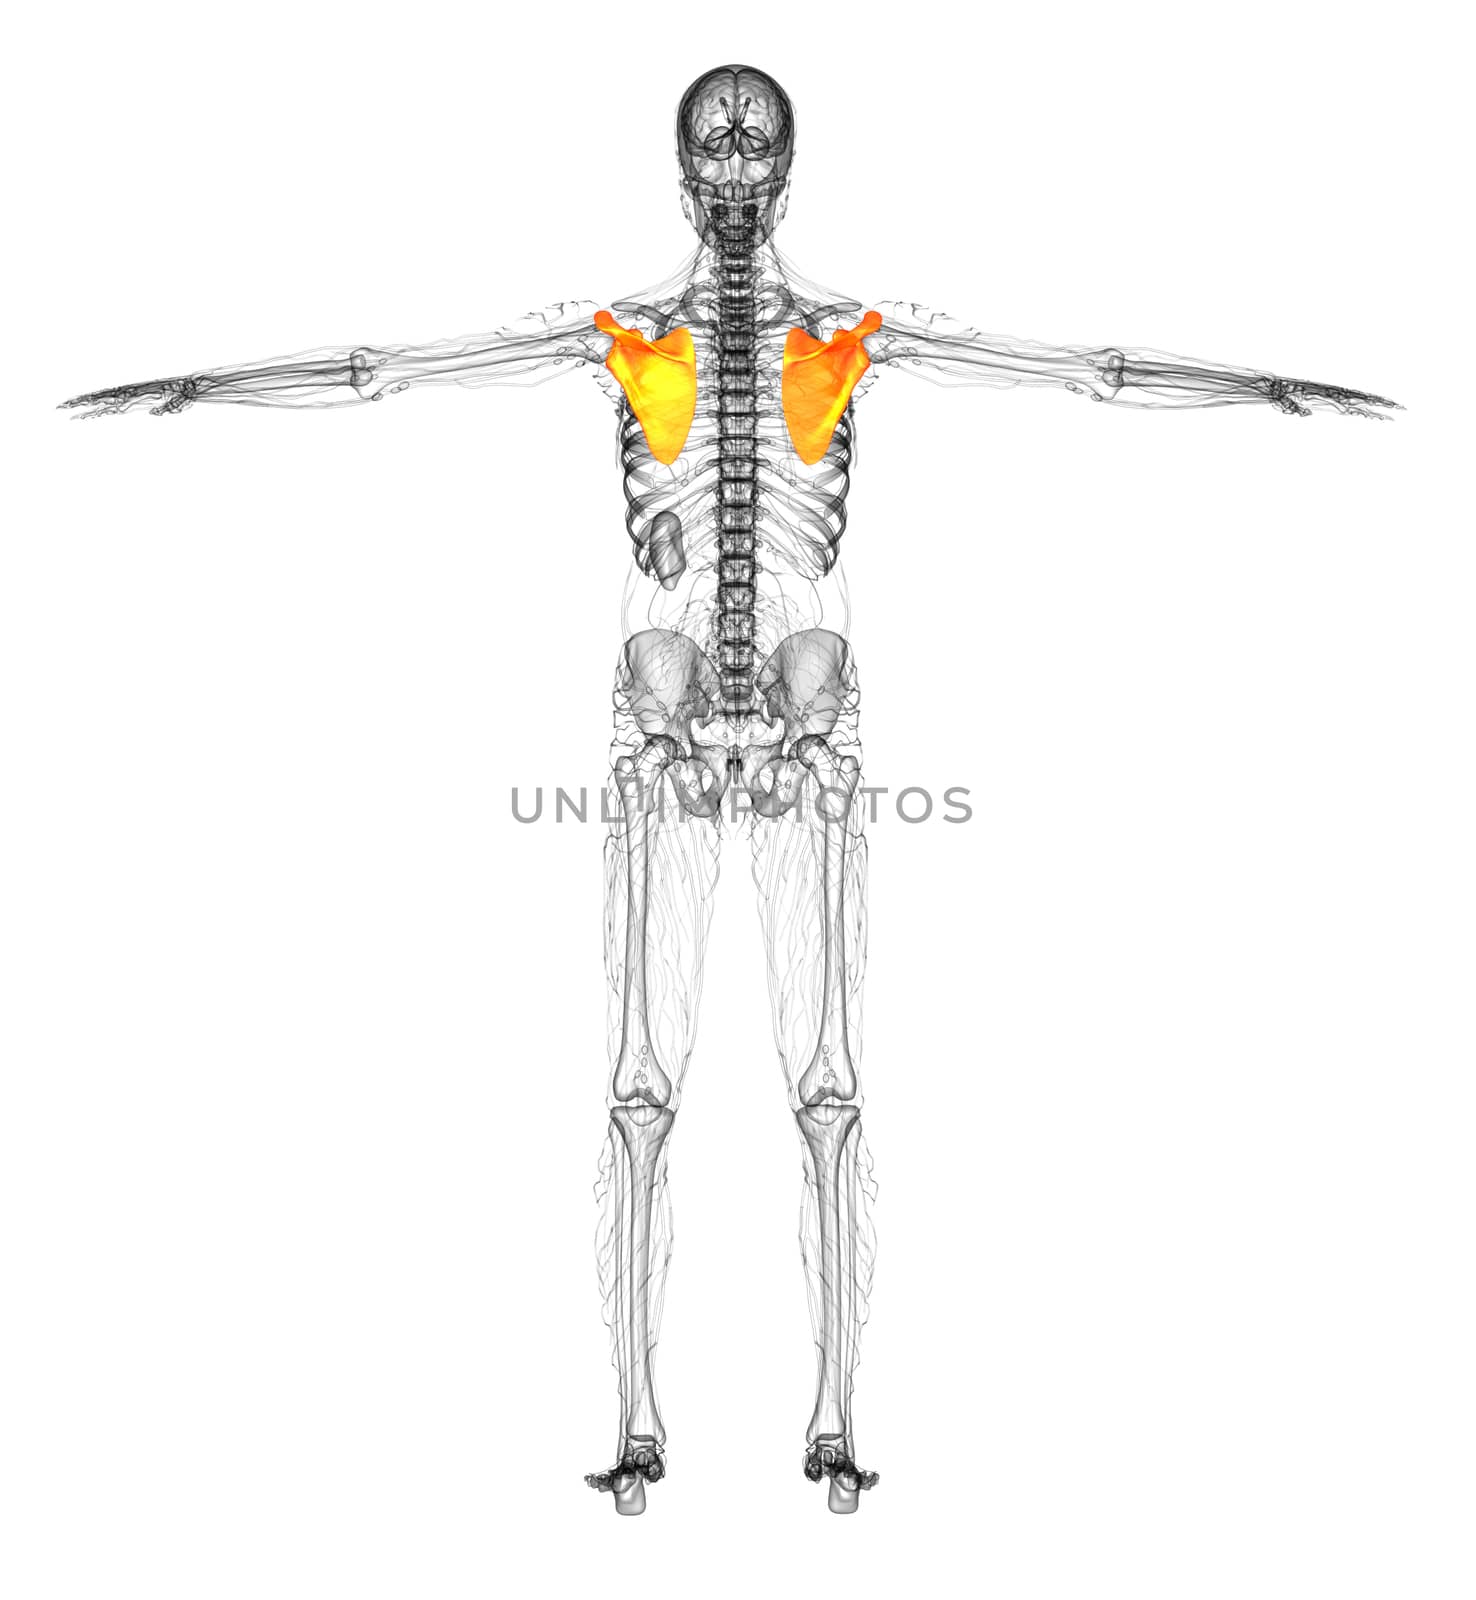 3d render medical illustration of the scapula bone - back view